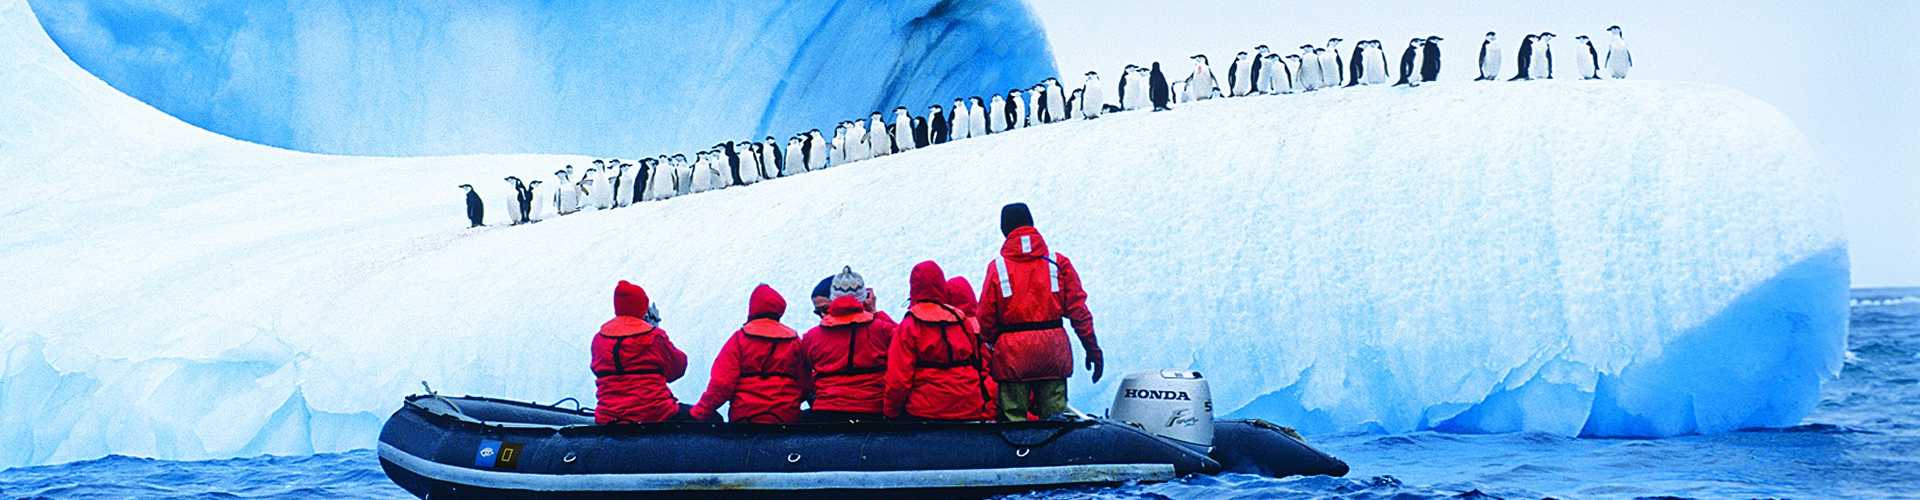 Antarktis Expeditionen